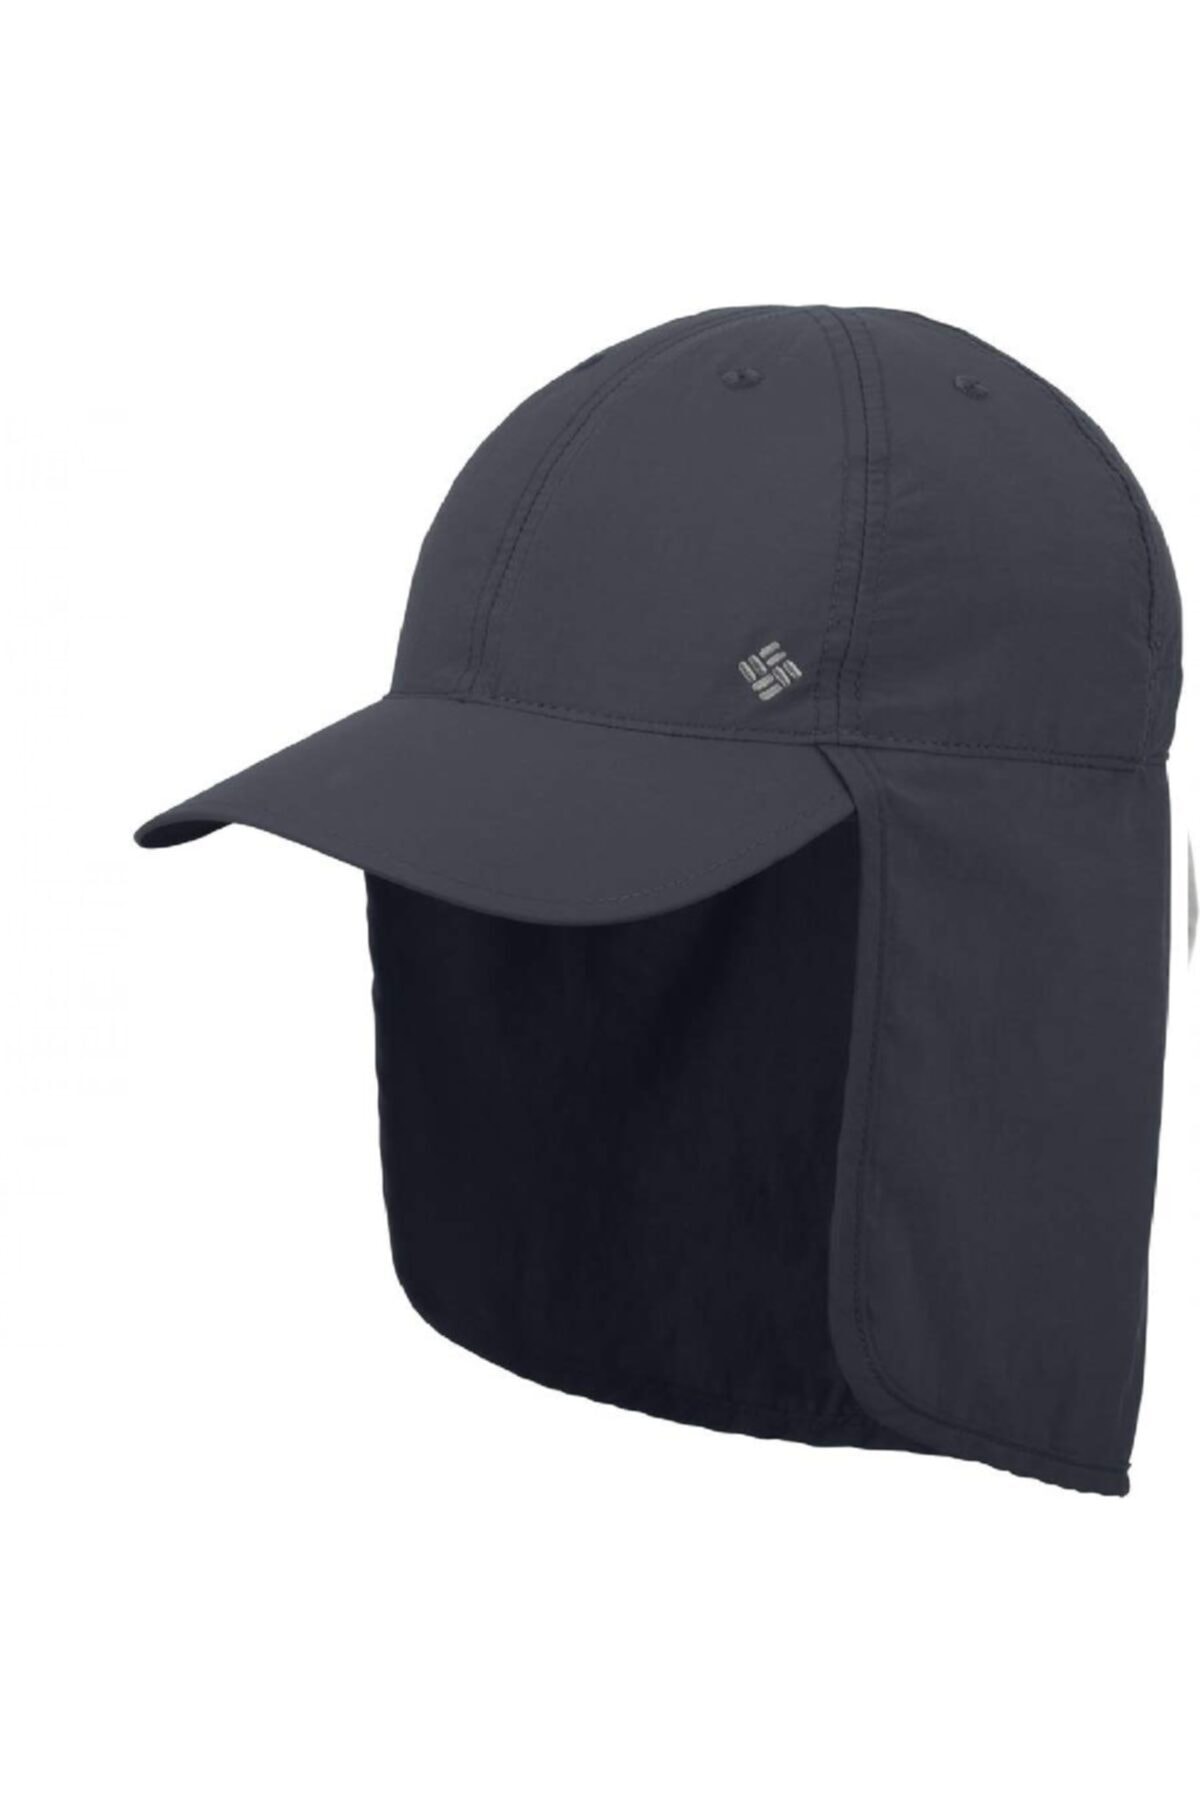 Columbia Schooner Bank Cachalot III unisex hat cu9108